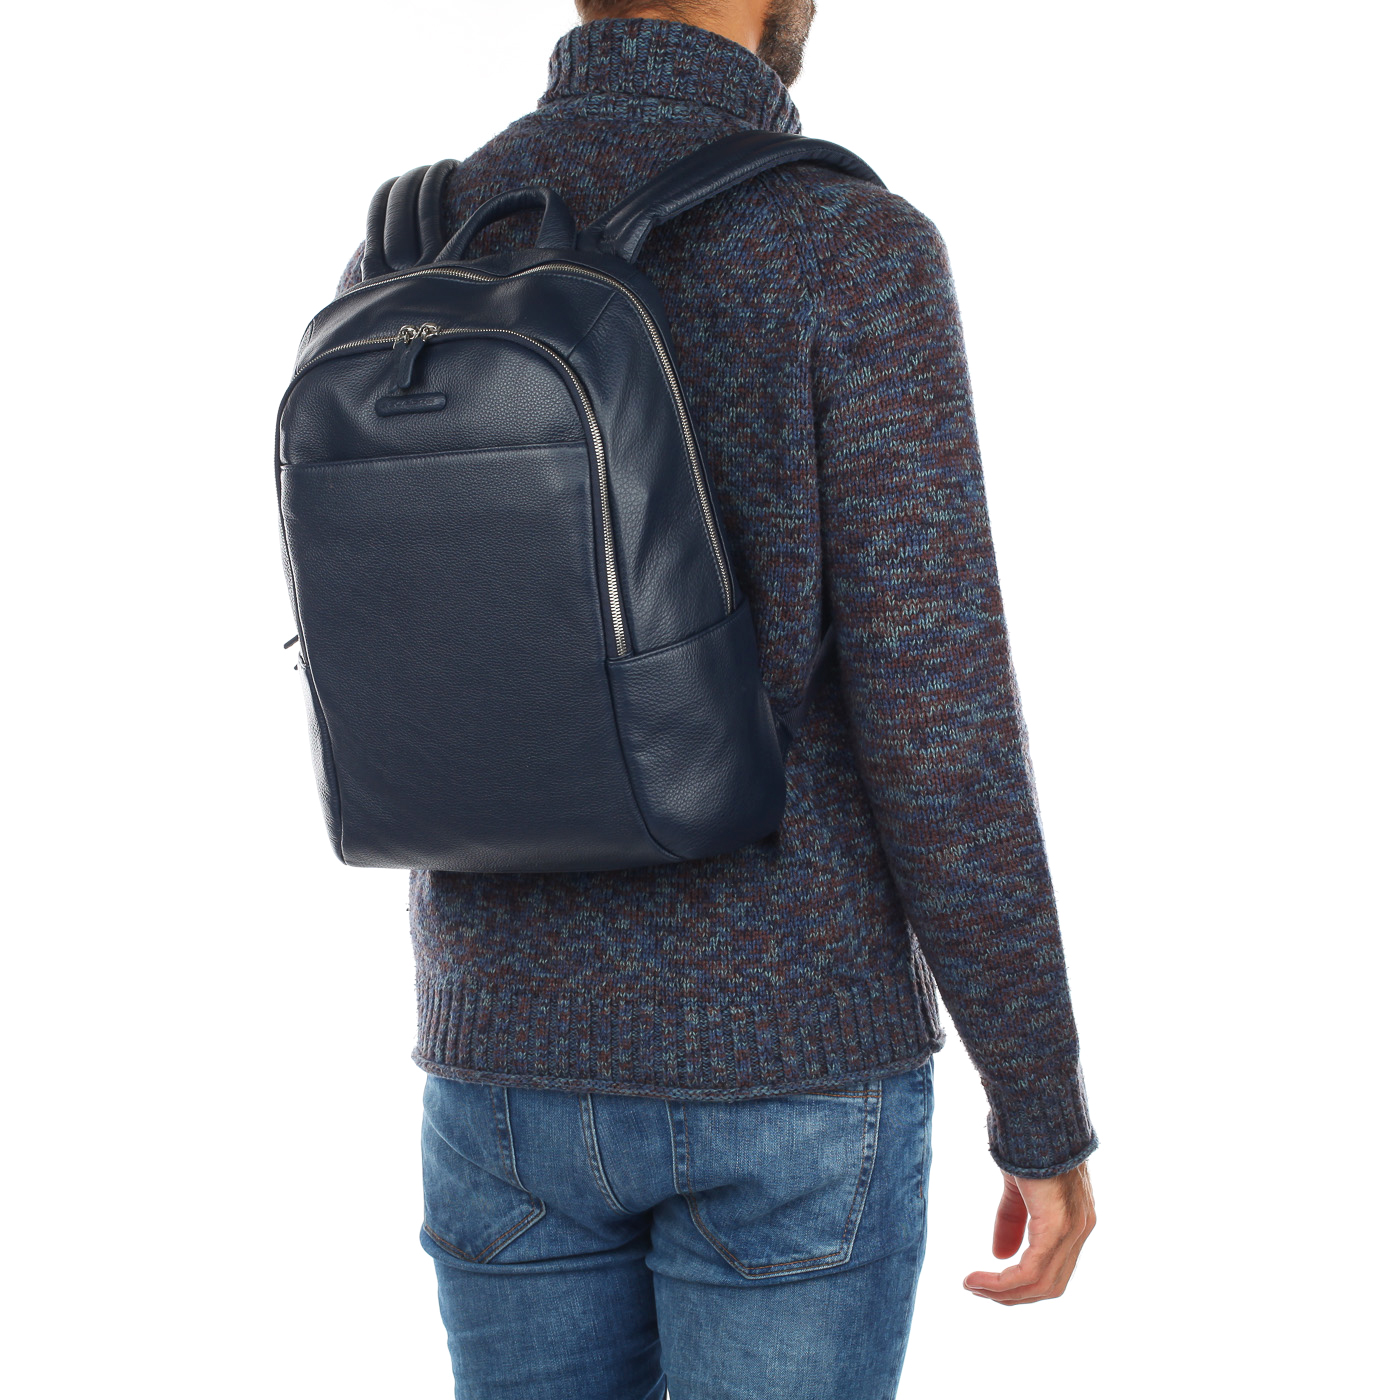 Мужской кожаный рюкзак с отделением для ноутбука Piquadro Modus